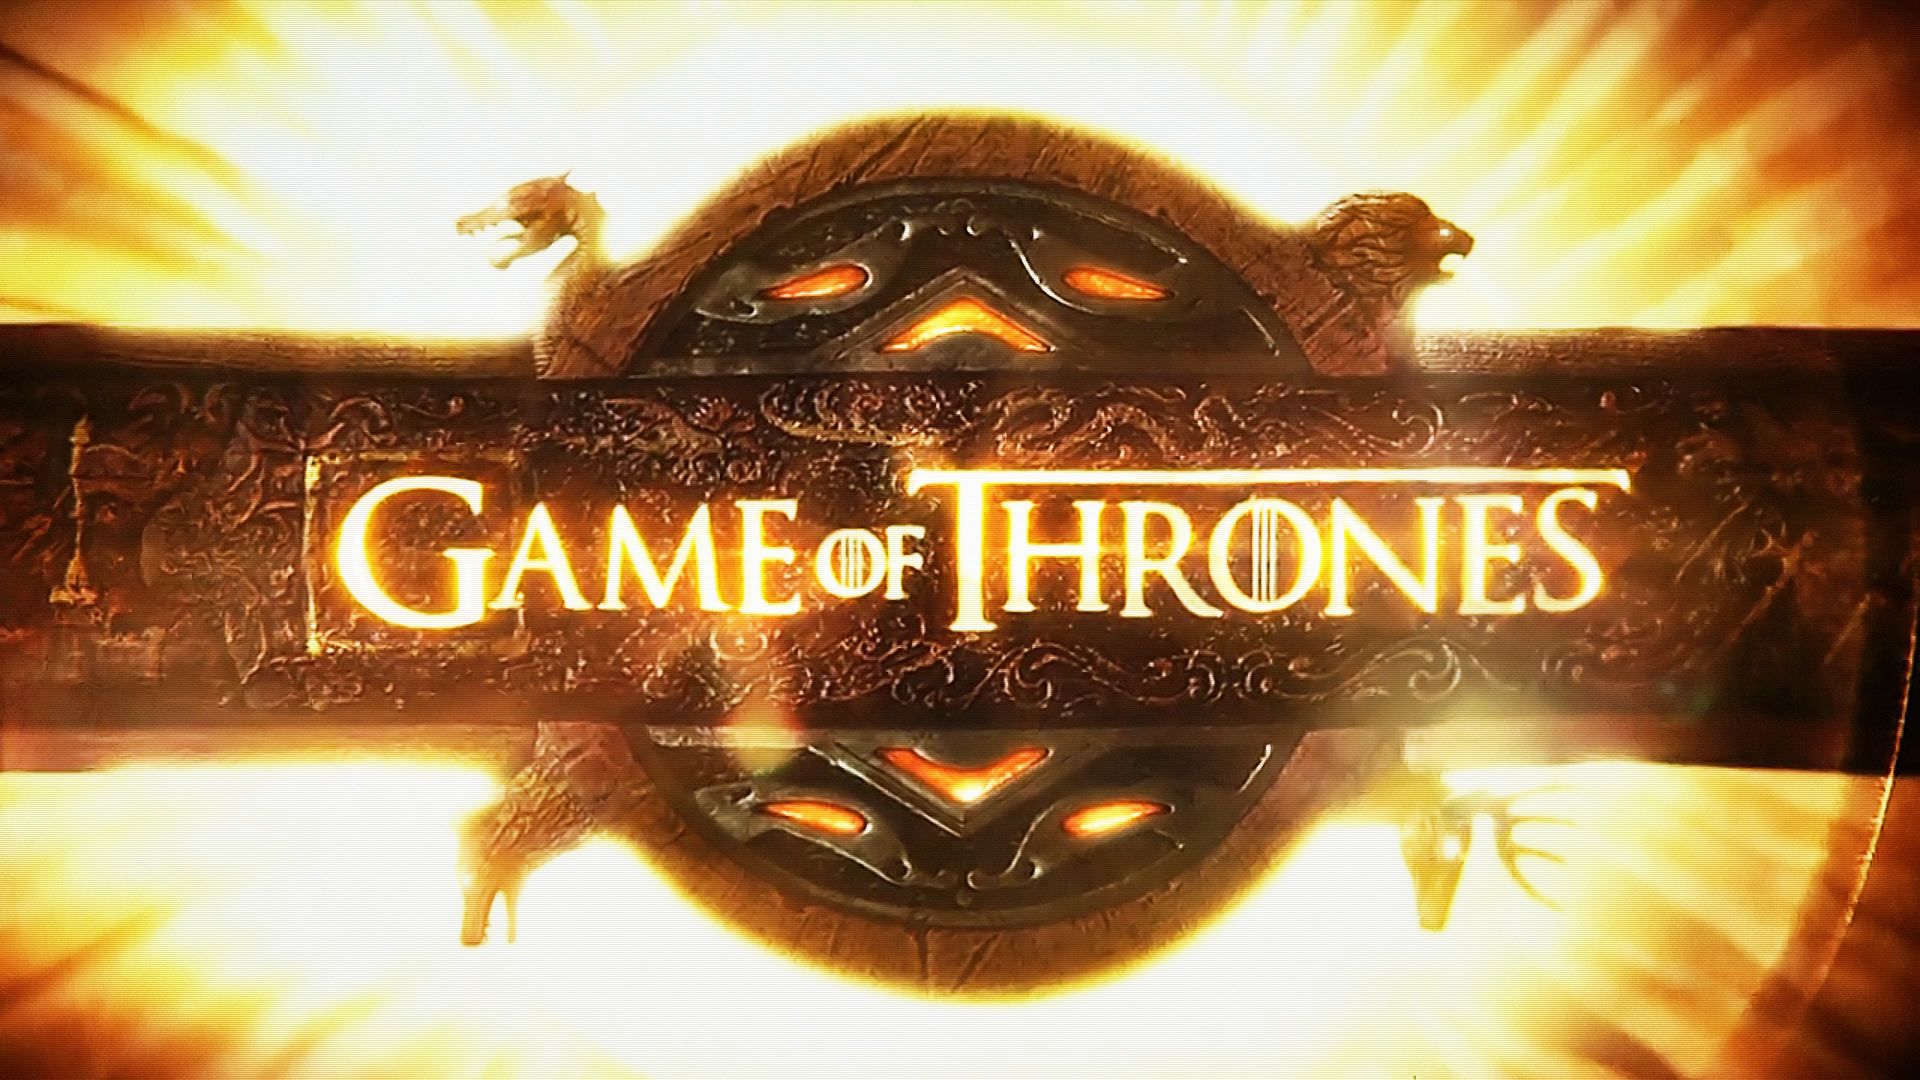 Game Of Thrones HD Wallpaper for desktop download